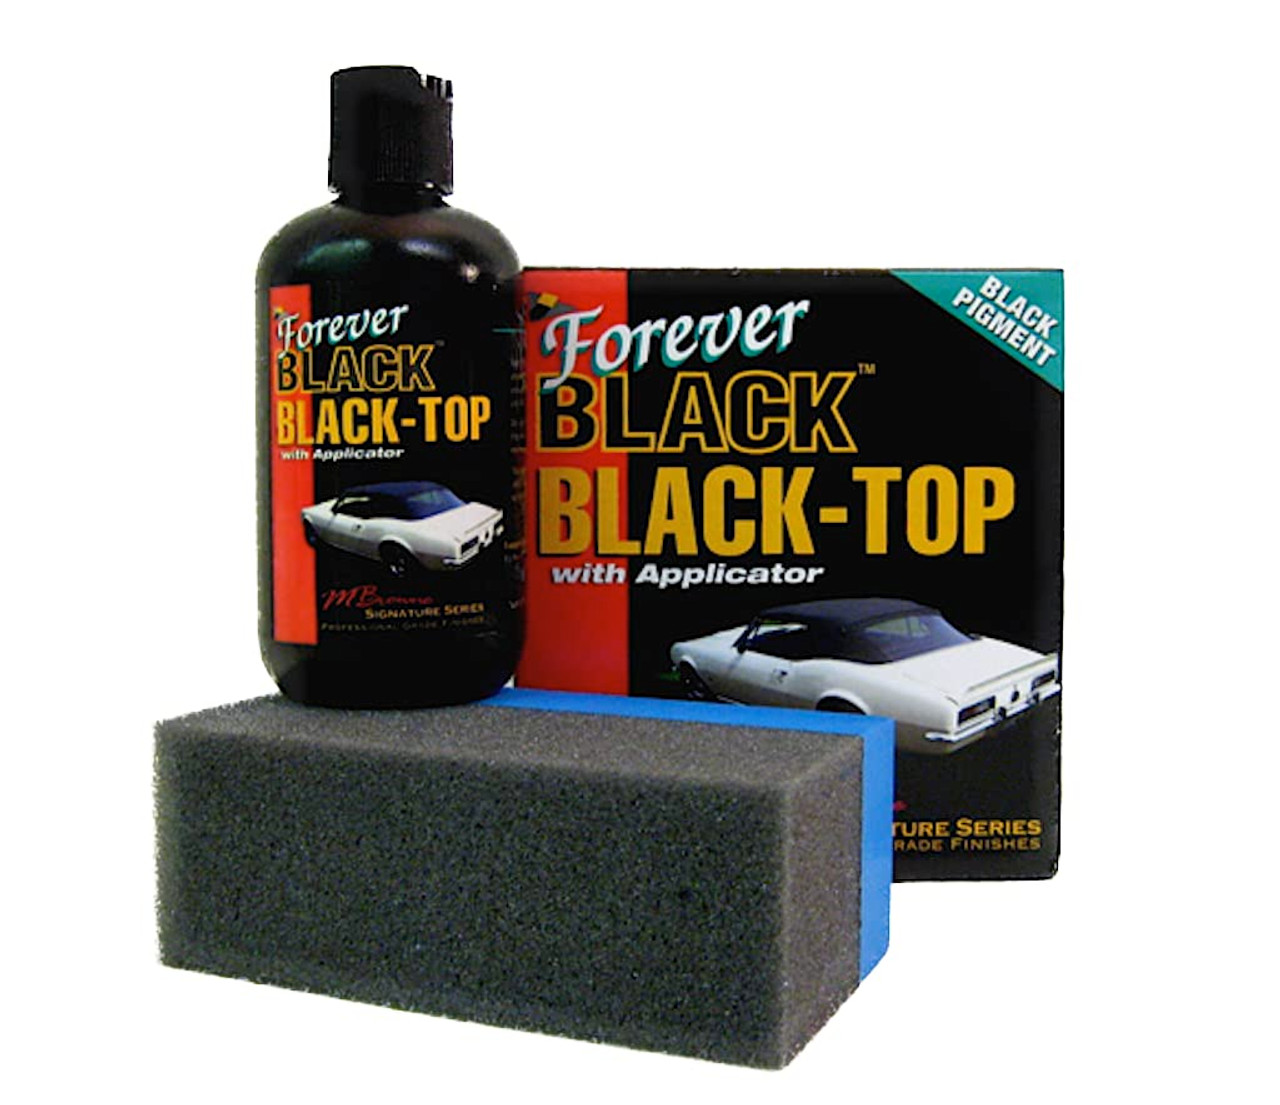 Forever Black Bumper & Plastic Trim Dye Kit